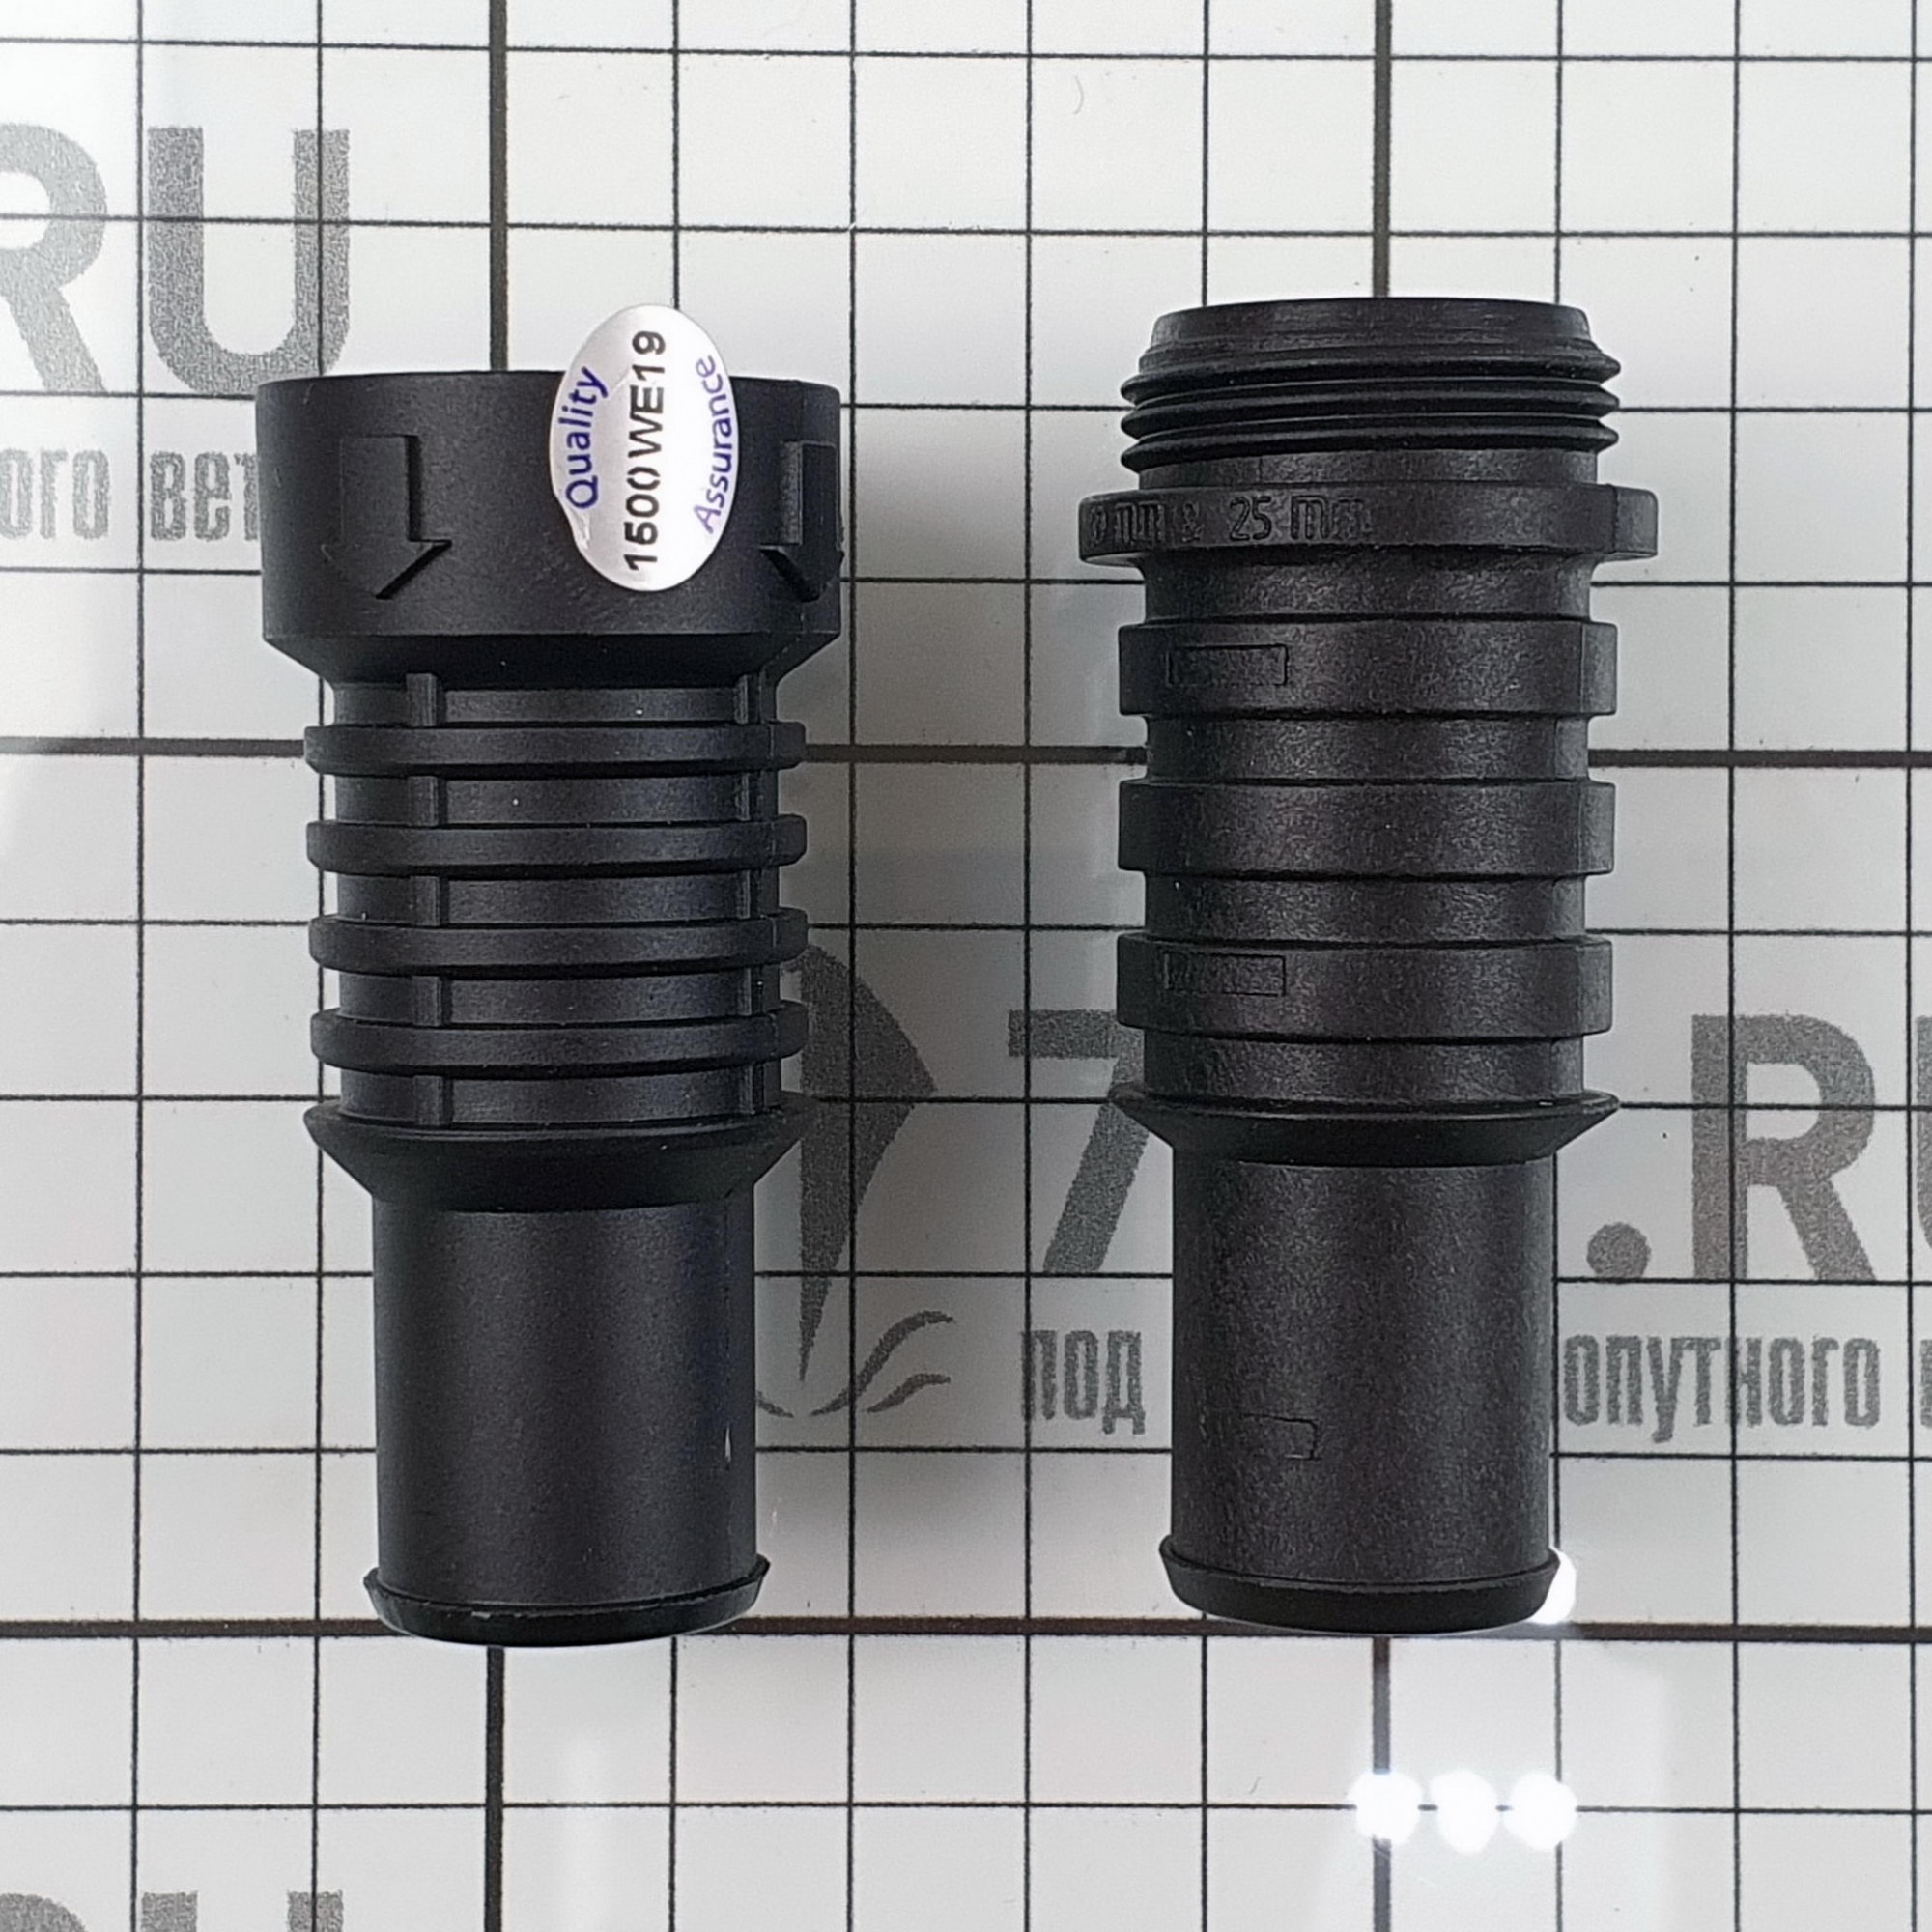 Купить Клапан невозвратный из пластмассы Whale LV1219 19 или 25 мм 7ft.ru в интернет магазине Семь Футов